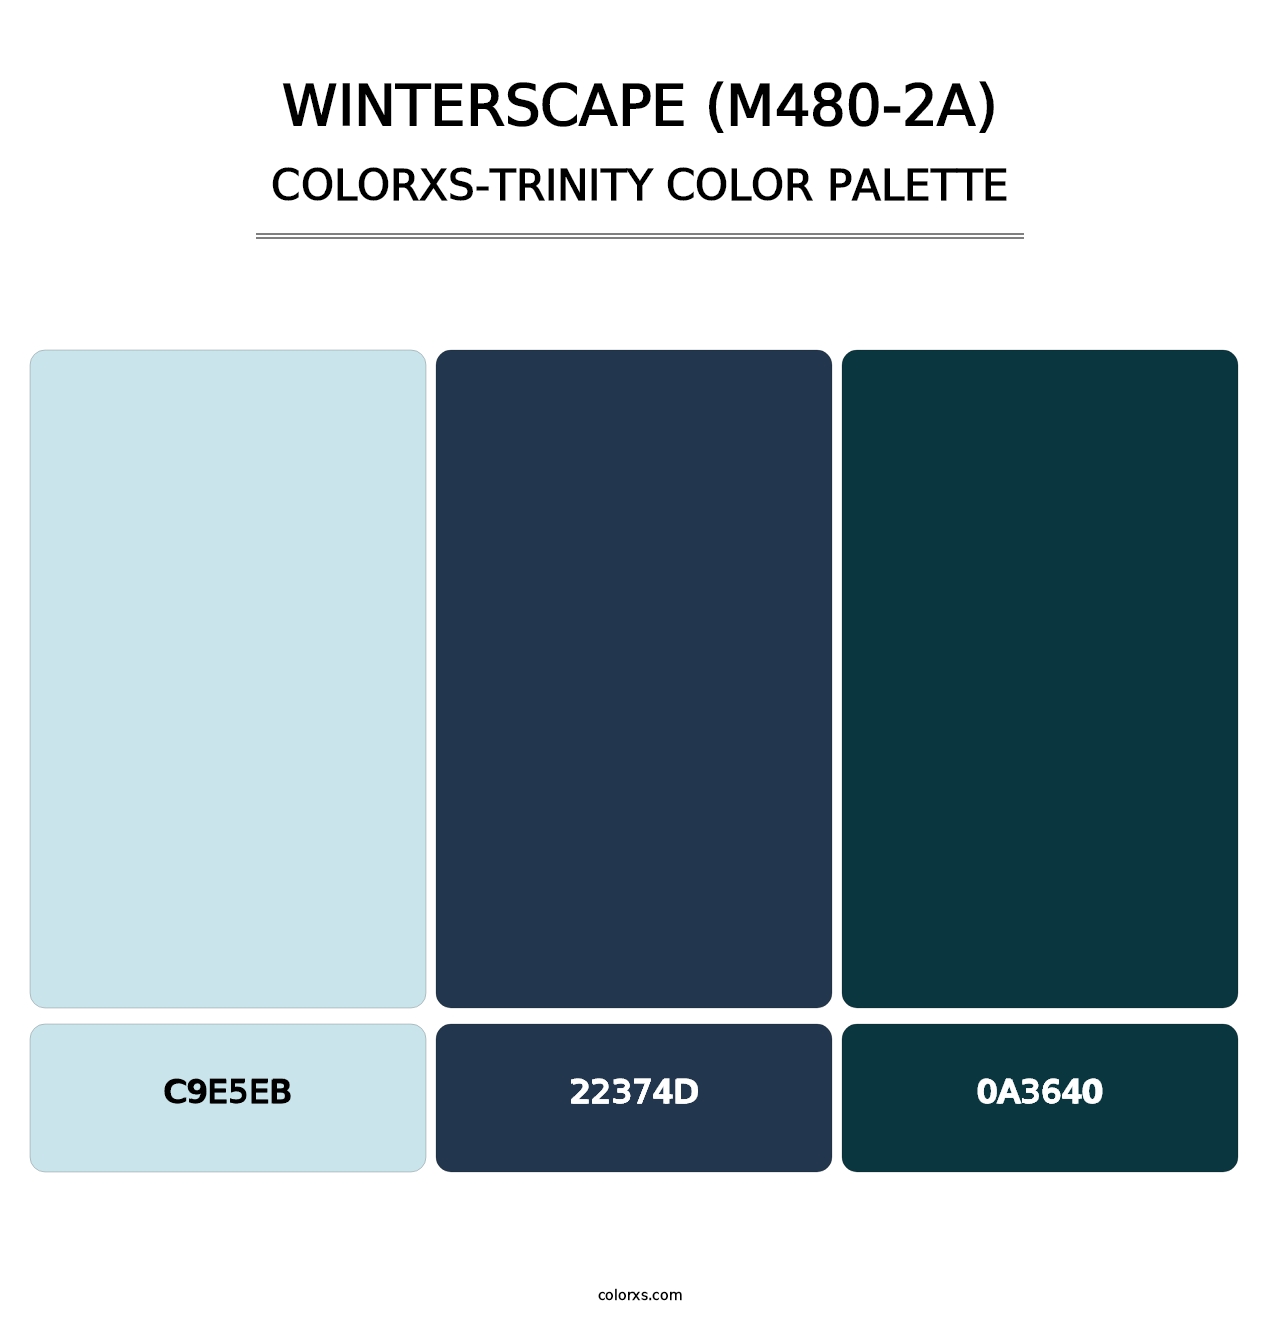 Winterscape (M480-2A) - Colorxs Trinity Palette